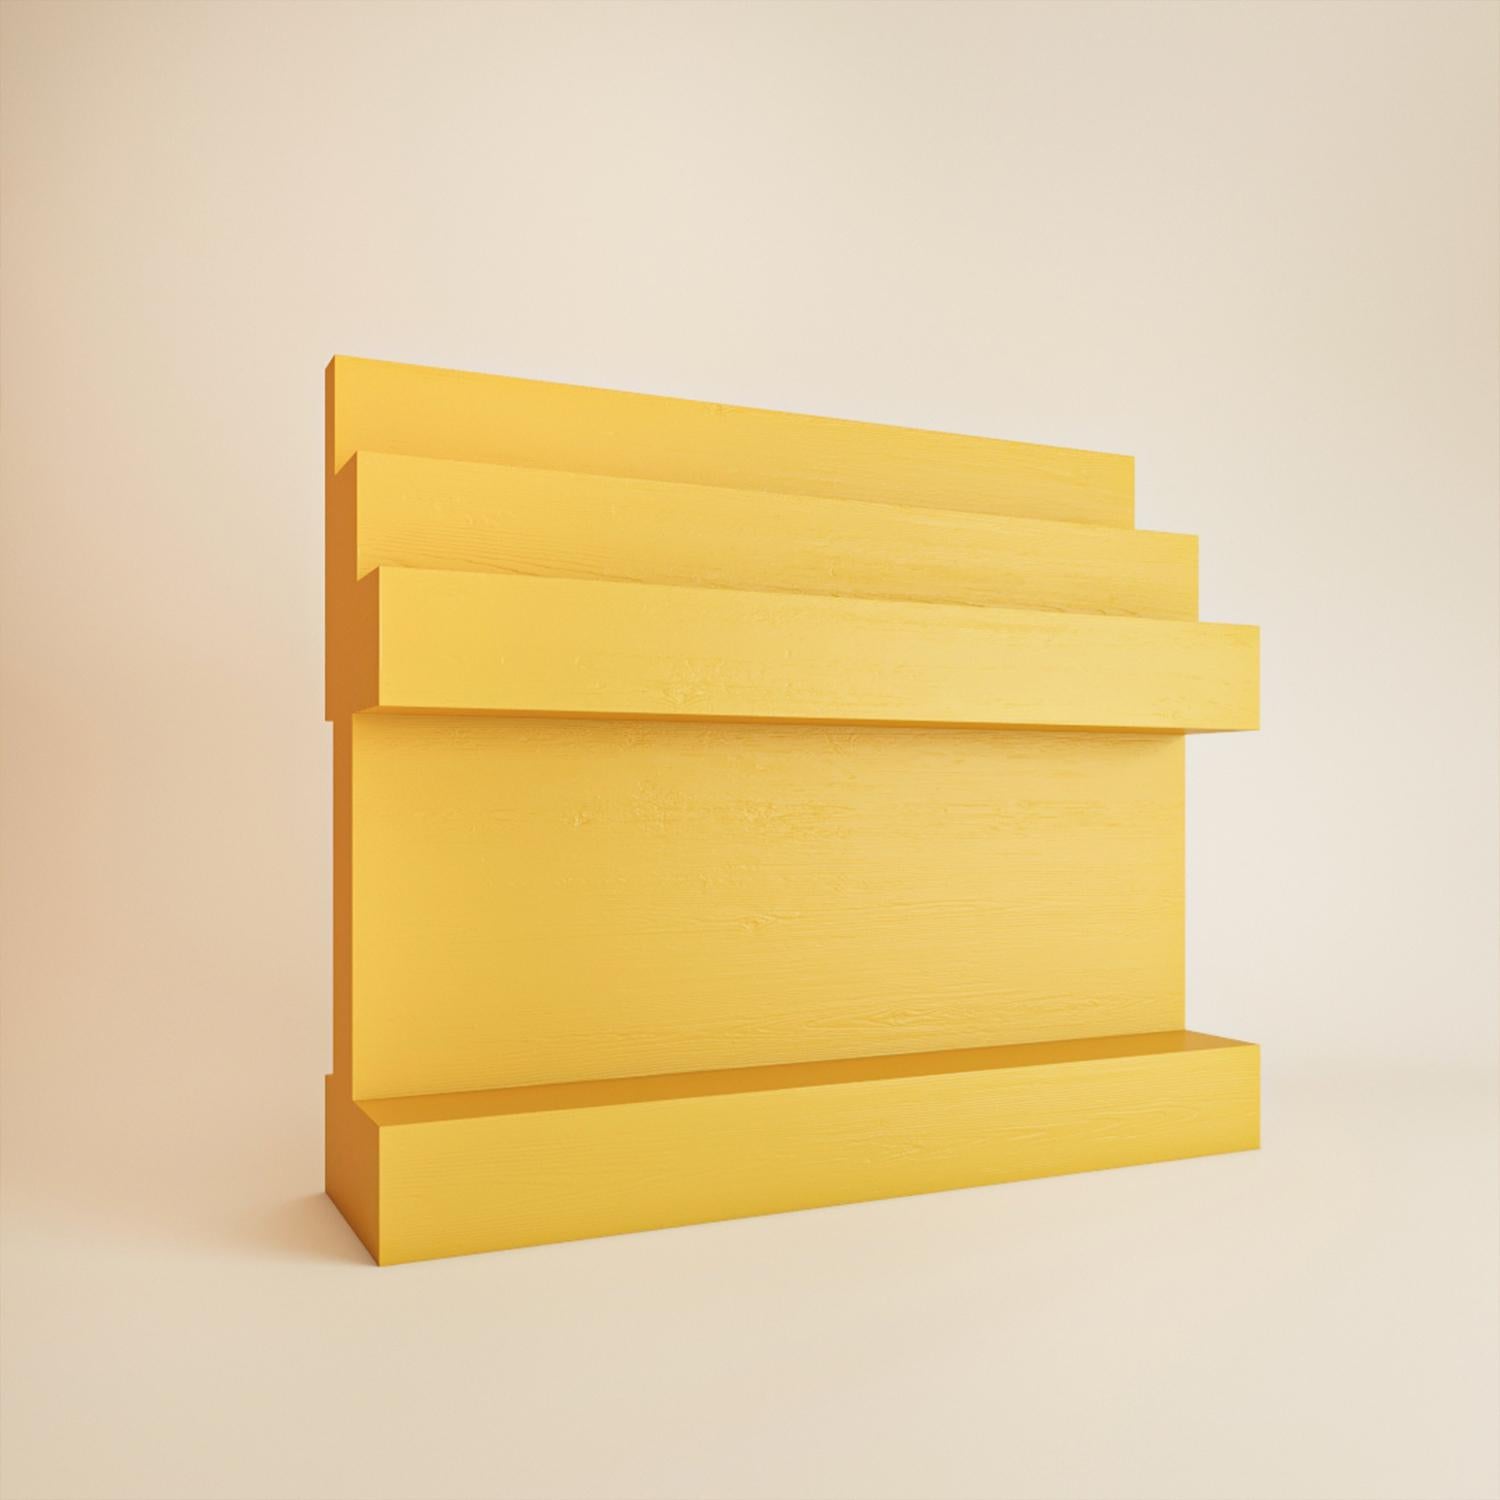 Wunderschönes gelbes Stufenbuchregal aus Eichenfurnier von Rejo Studio.
Das Bücherregal hat eine sehr glatte Oberfläche, die das natürliche Eichenholz noch besser zur Geltung bringt. Teil (der Topographie unseres intimen Seins). 
Erhältlich in